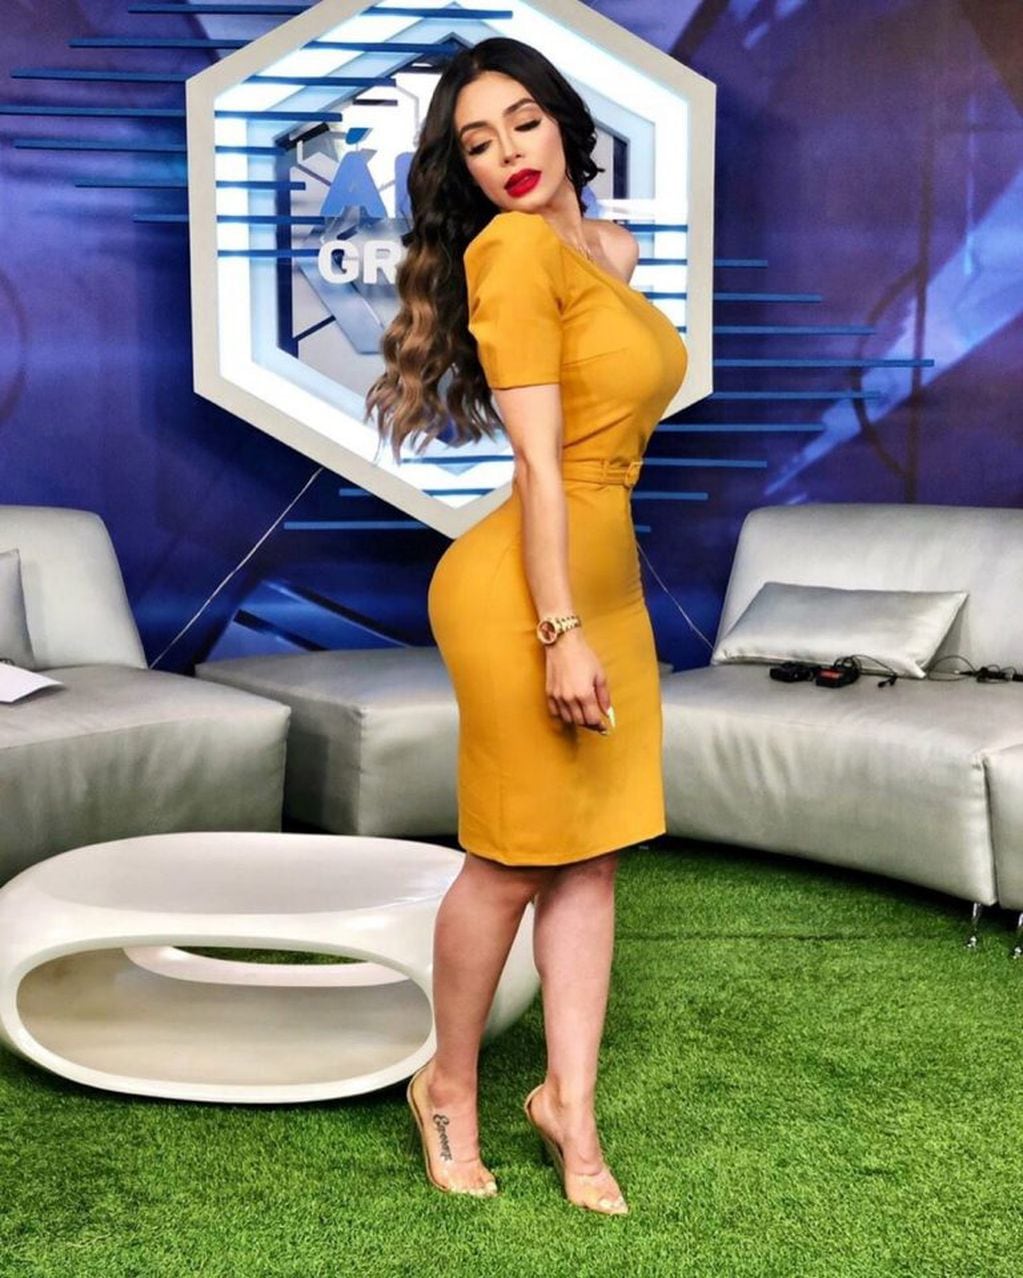 En Instagram, es conocida como "Sandía" y ahora trabaja en la televisión de Guatemala como comentarista deportiva